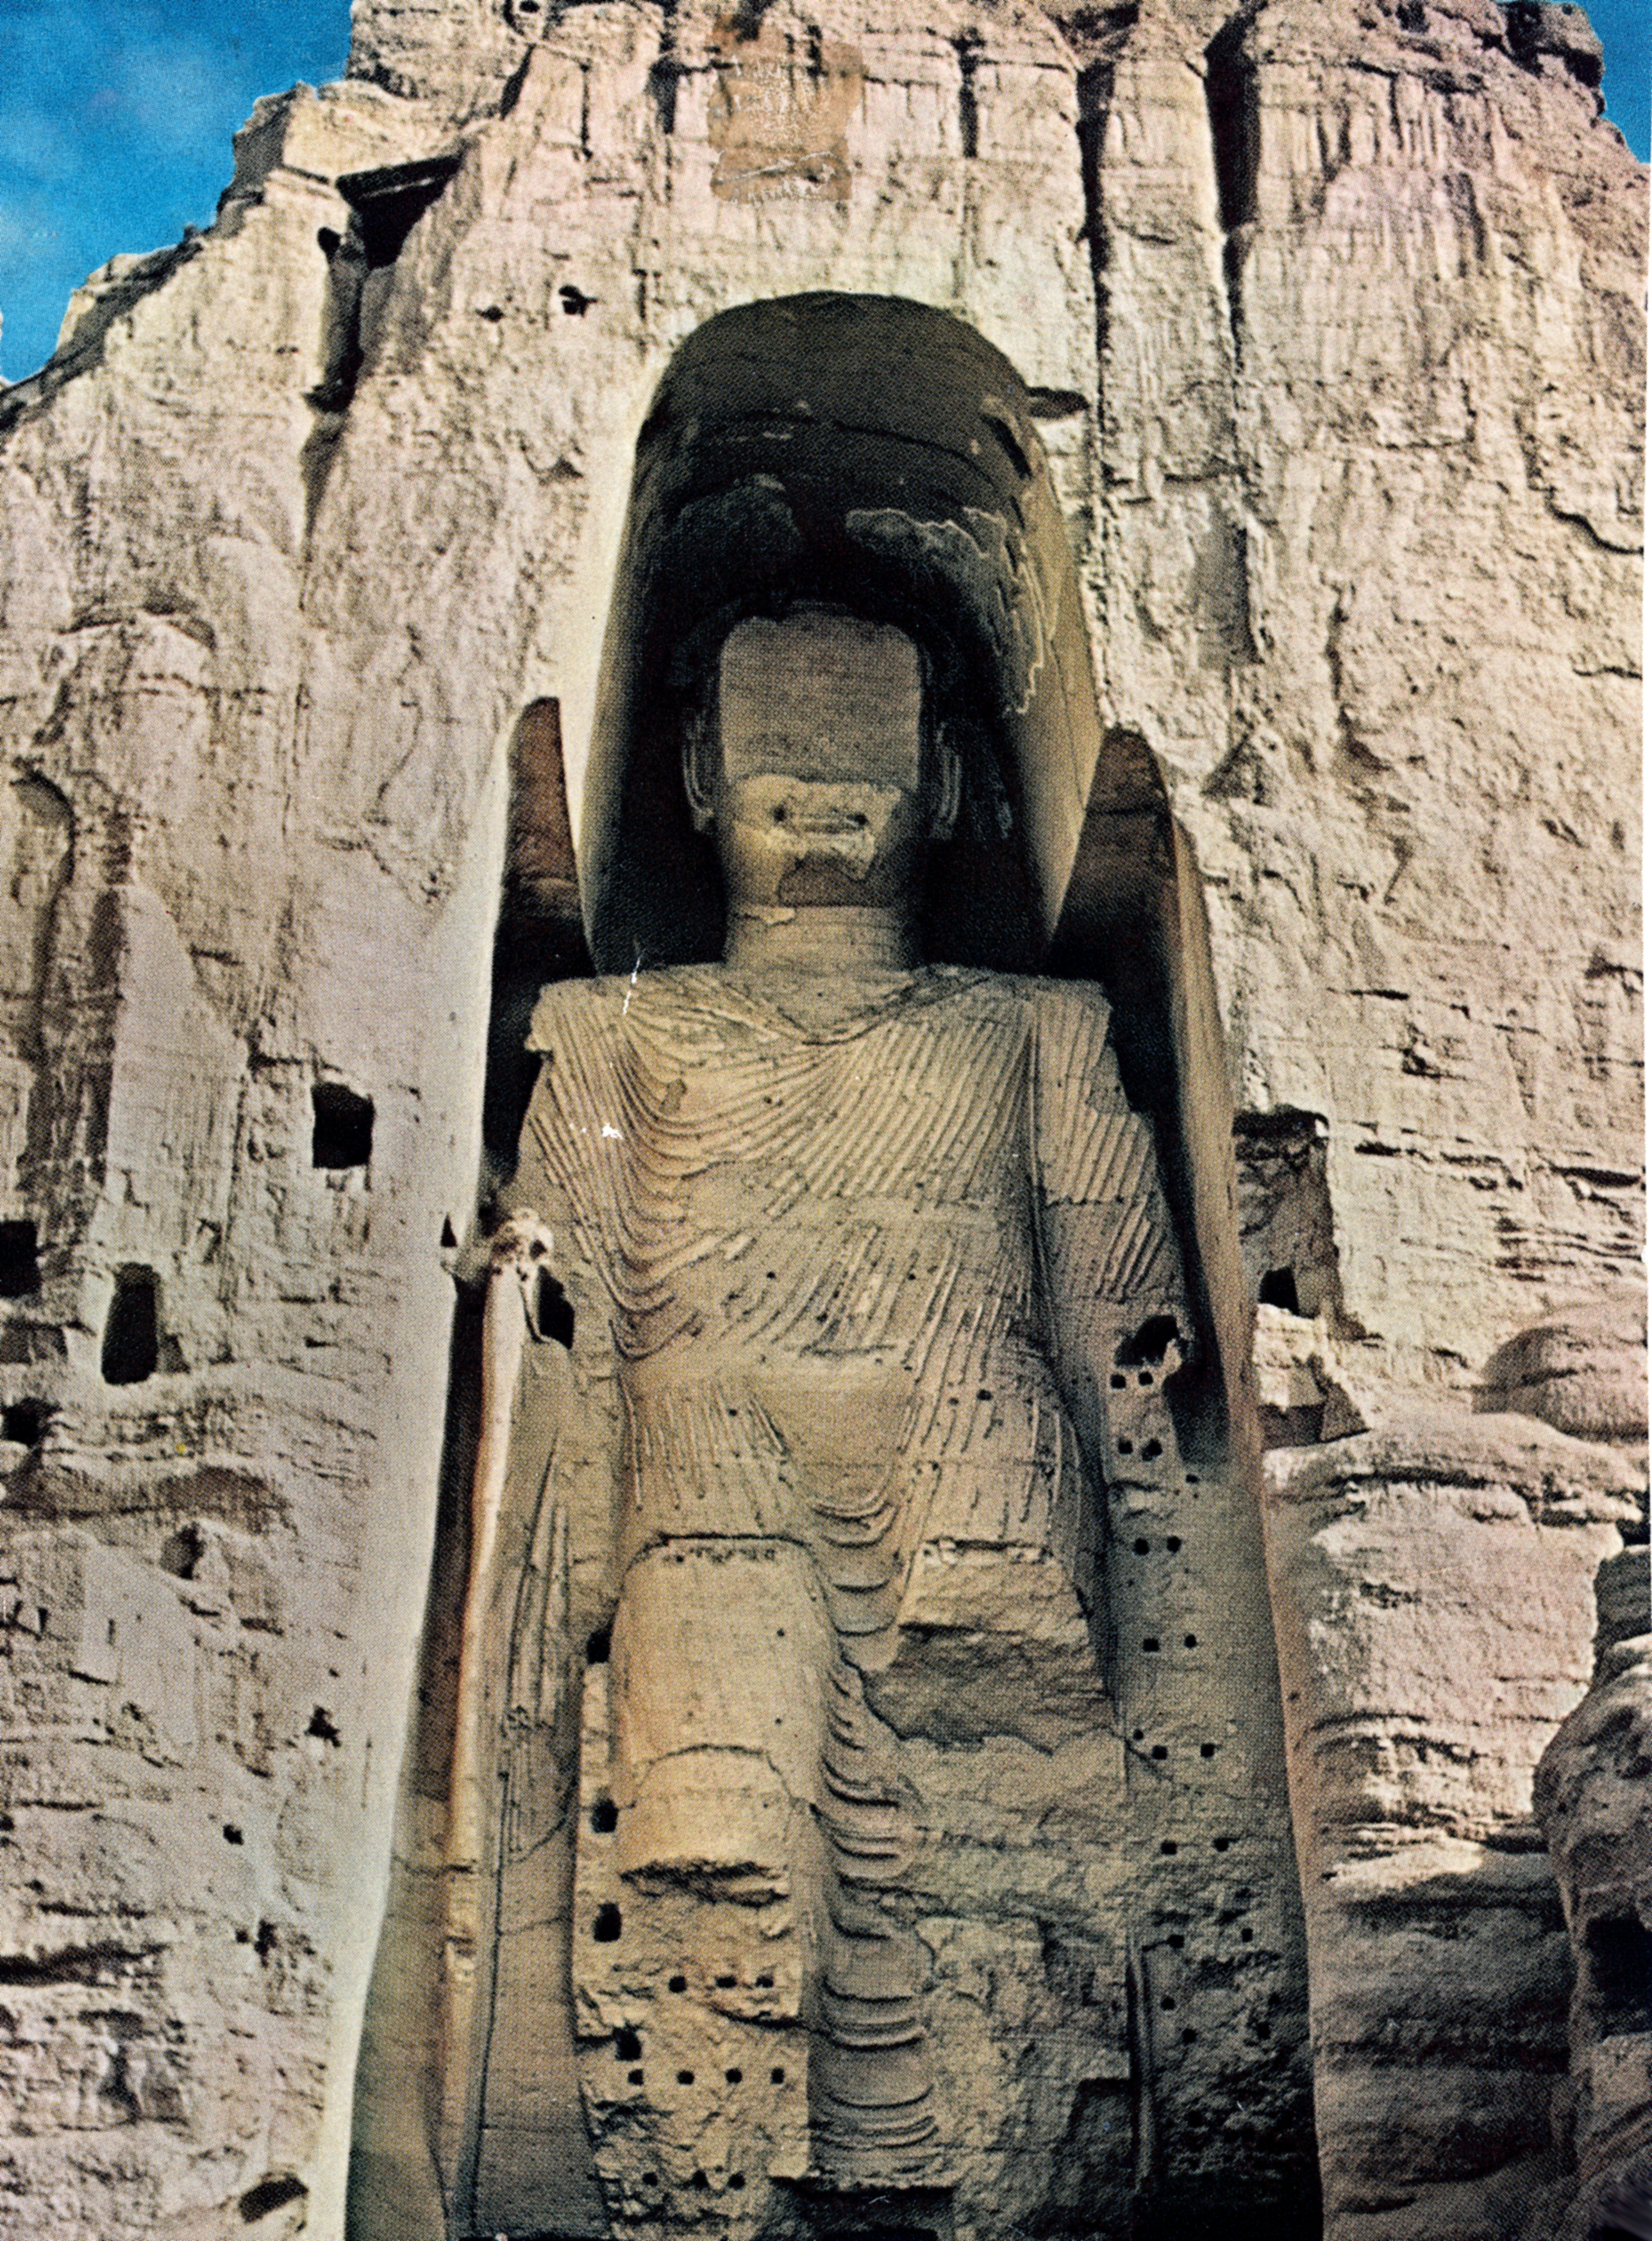 مجسمه بودای  بامیان (The statue of Budda in Bamiyan   )/موزه برادران امیدوار